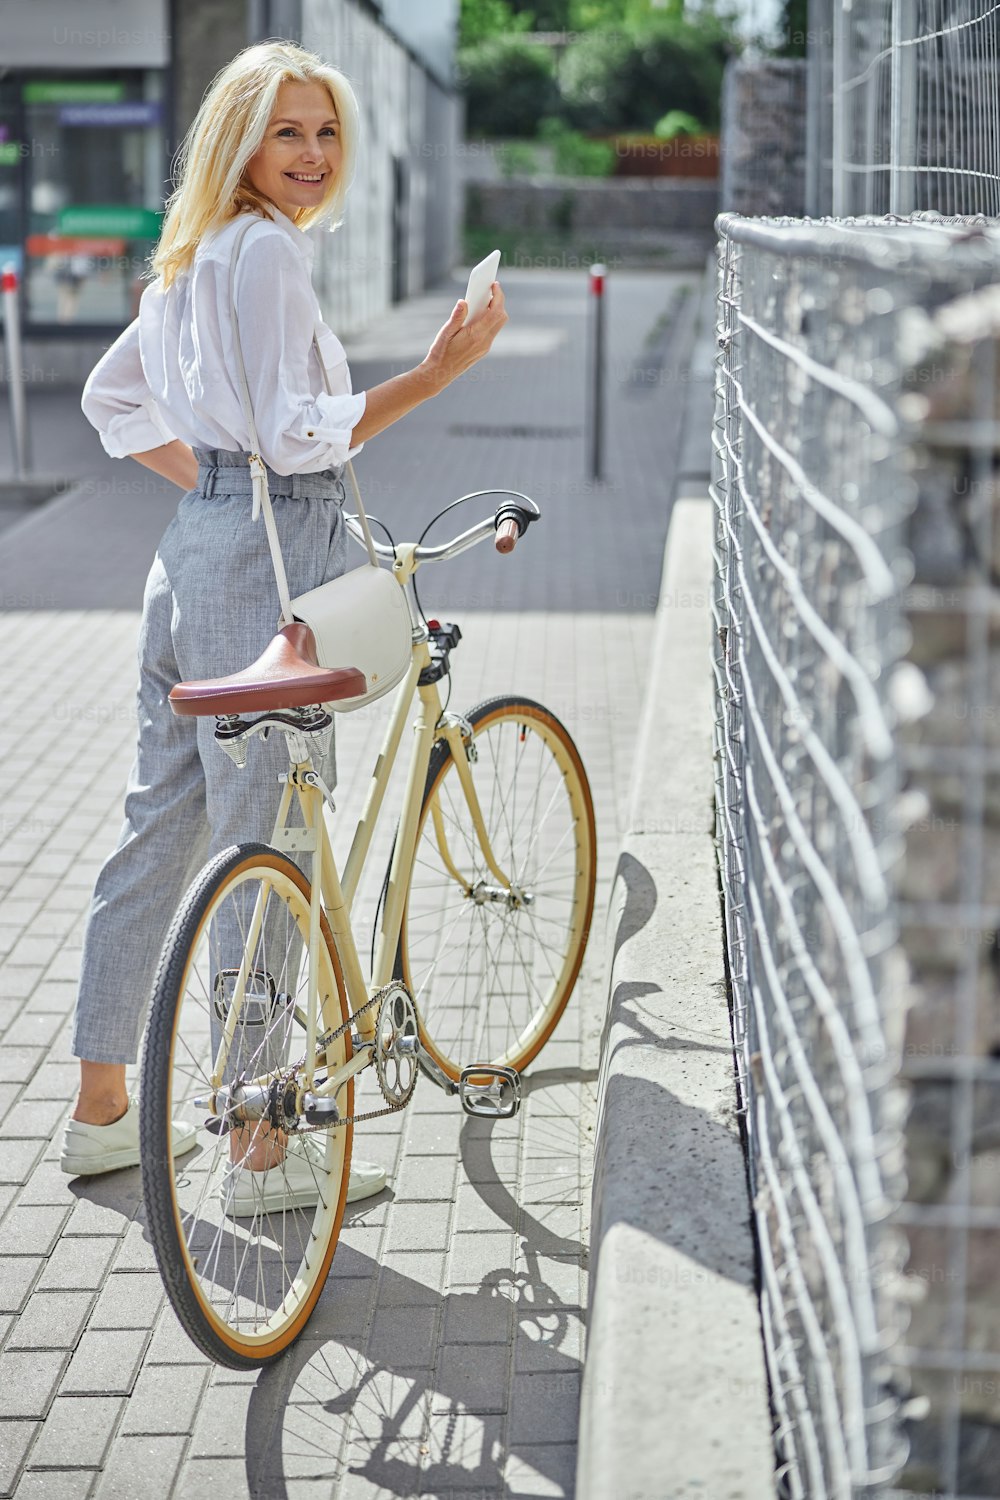 Portrait en pied d’une femme blonde souriante heureuse avec un vélo rétro jaune marchant dans la ville